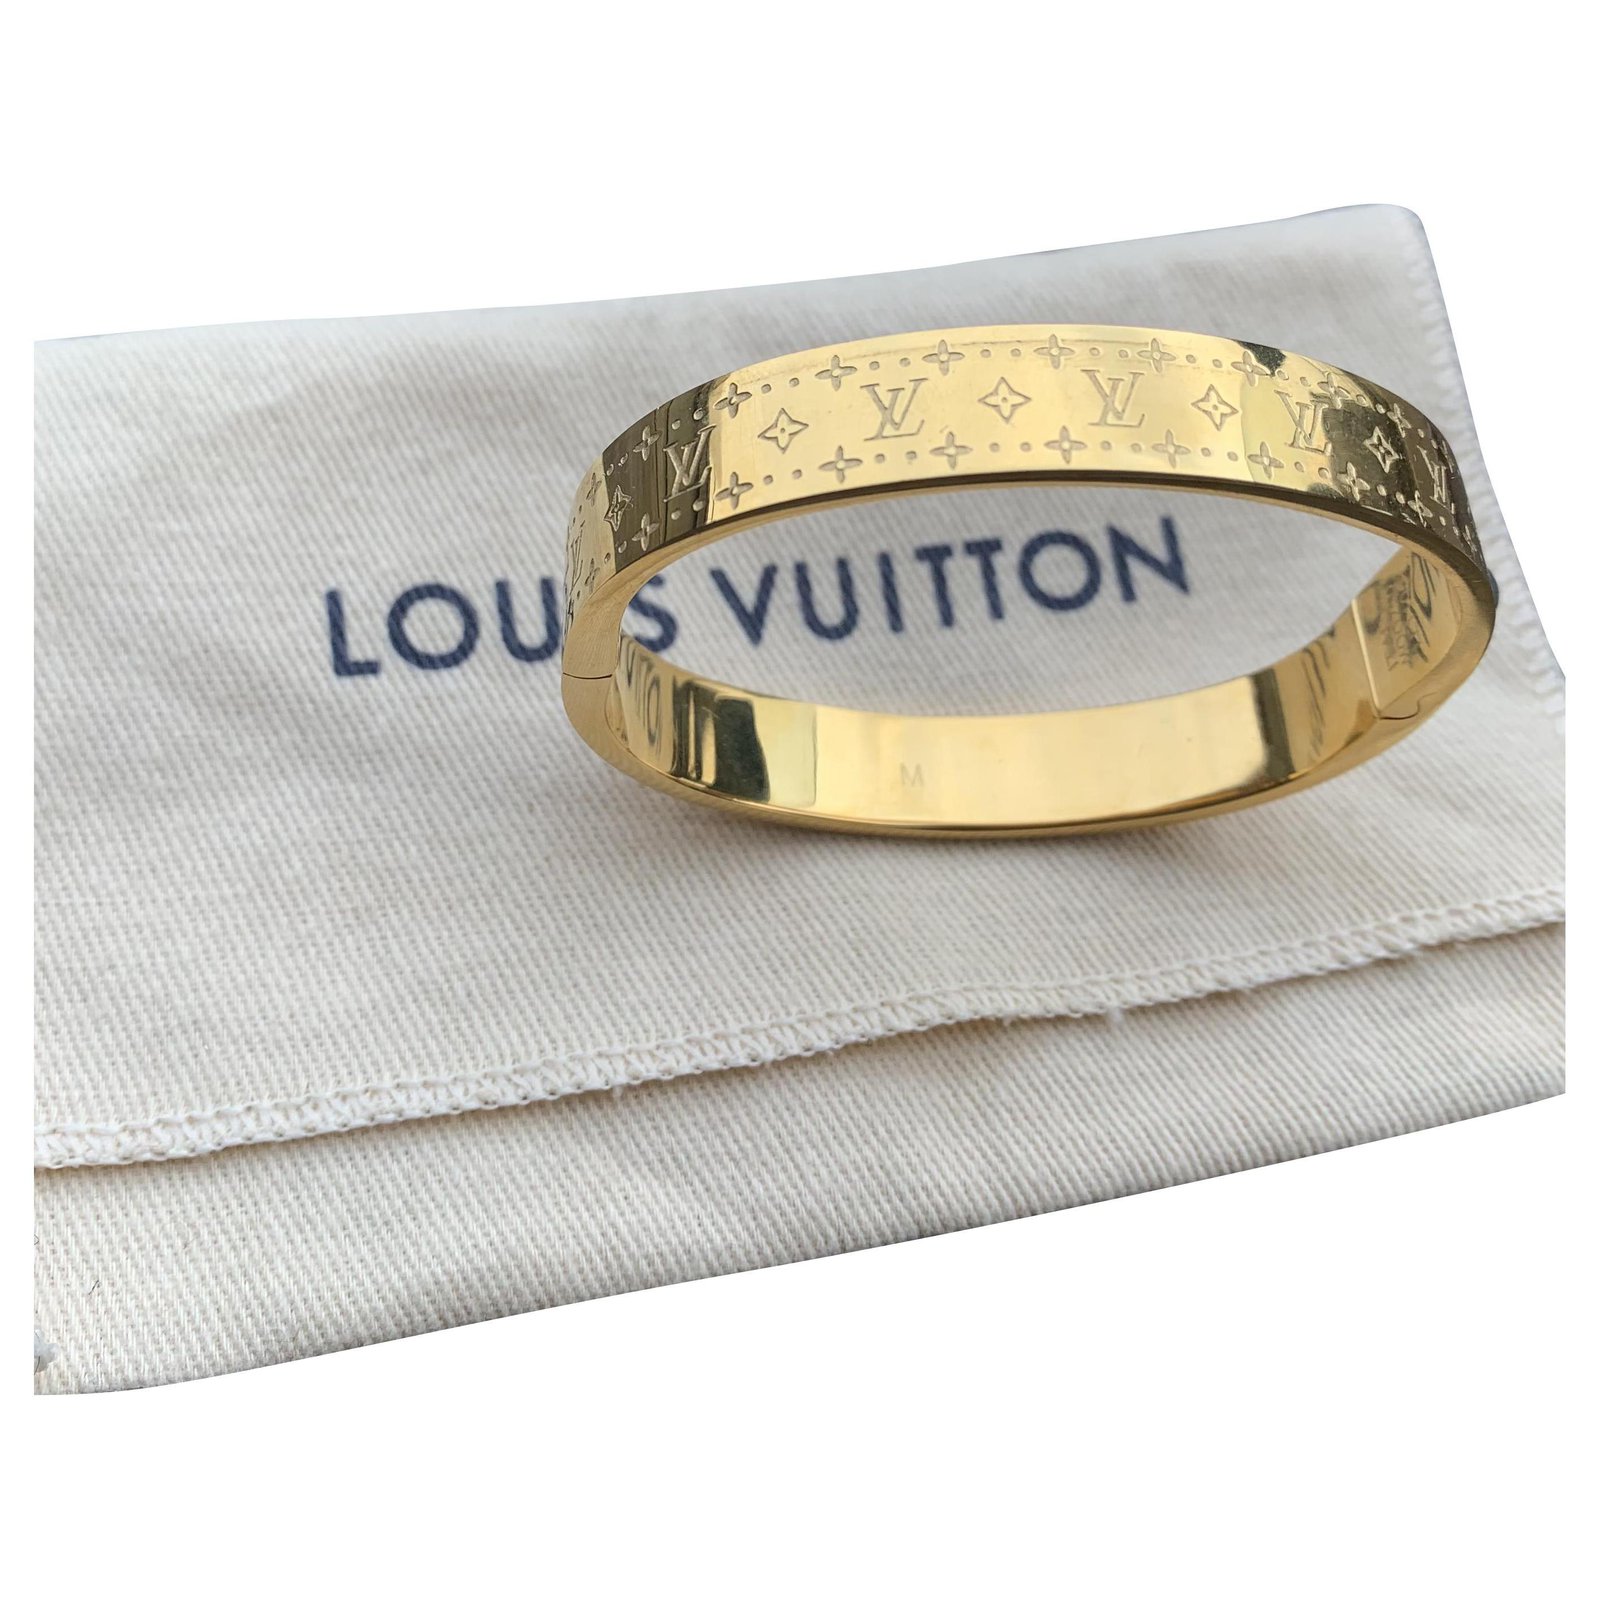 Bracciali Louis vuitton in Oro giallo Dorato - 30410872